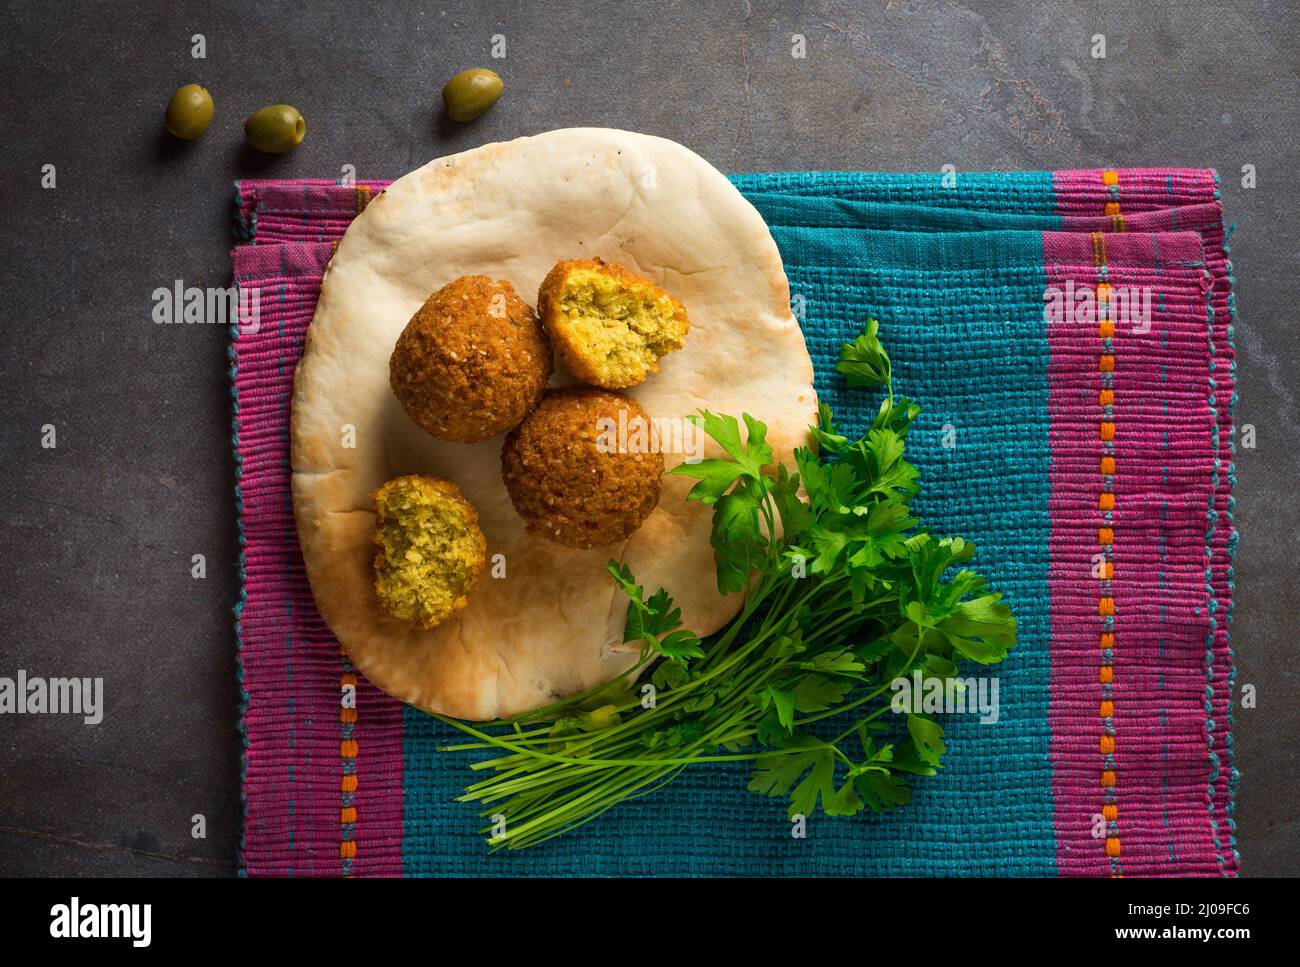 Comida popular en la calle del Medio Oriente: Falafel y kuboos. Vista superior del delicioso Falafilo frito colocado en el pan Khuboos o pita. Foto de stock